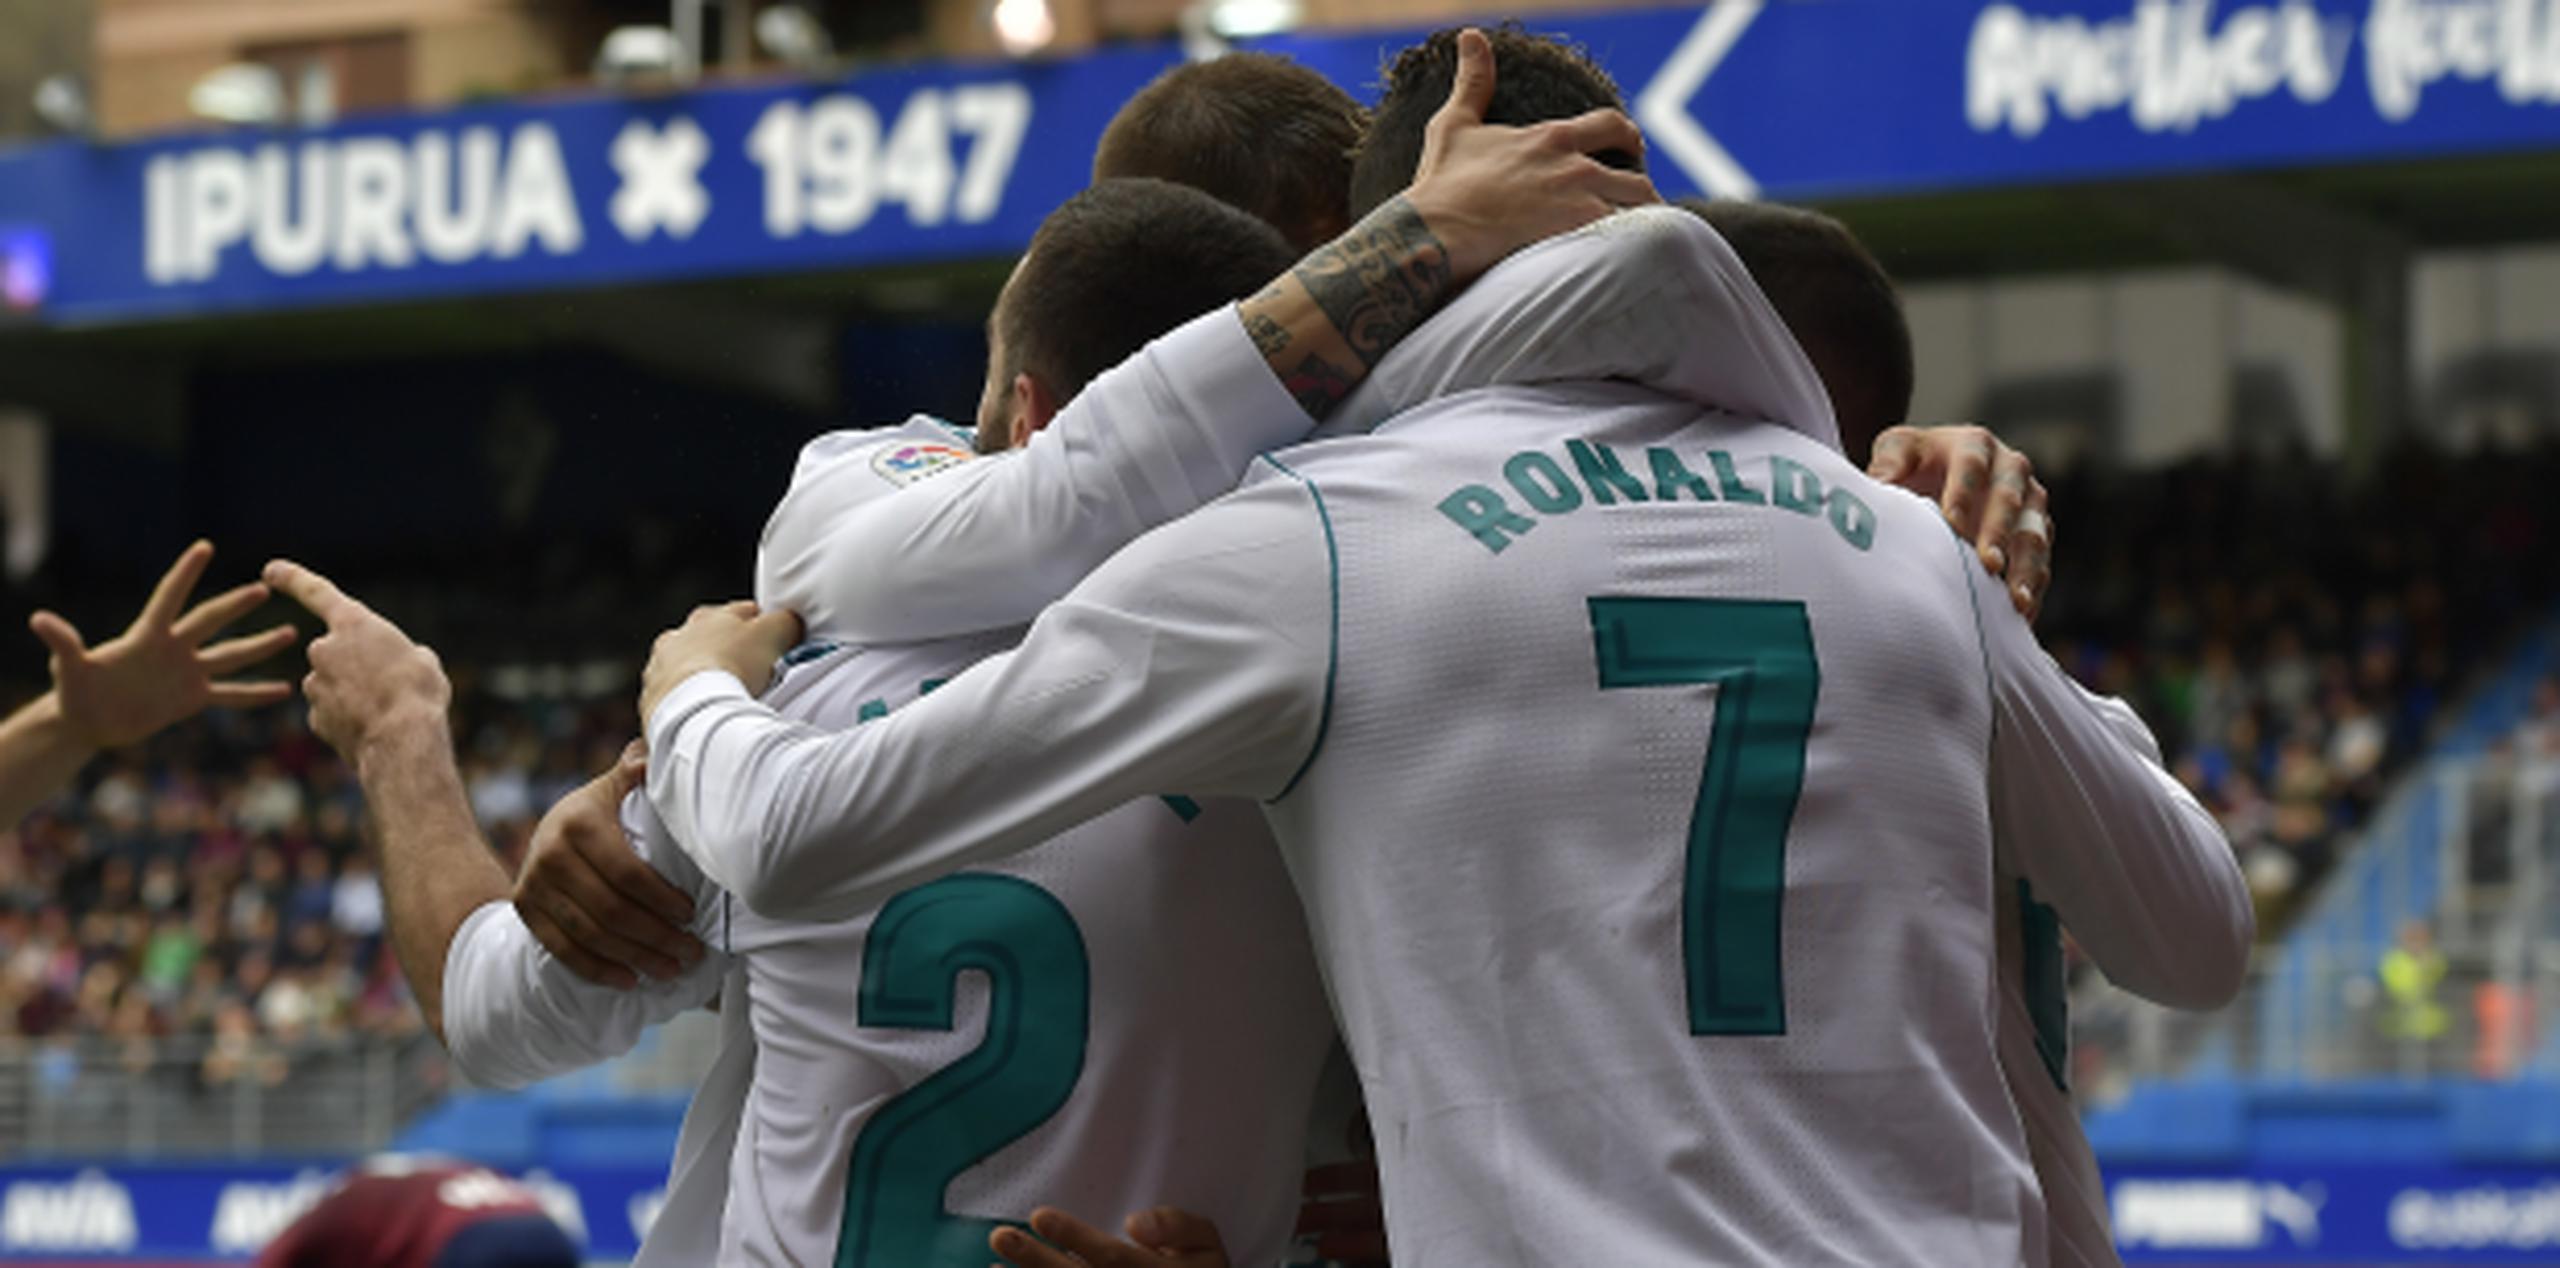 El jugador de Real Madrid, Cristiano Ronaldo, de espalda, festeja con sus compañeros tras anotar un gol contra Eibar en un partido por la liga española este sábado. (AP)